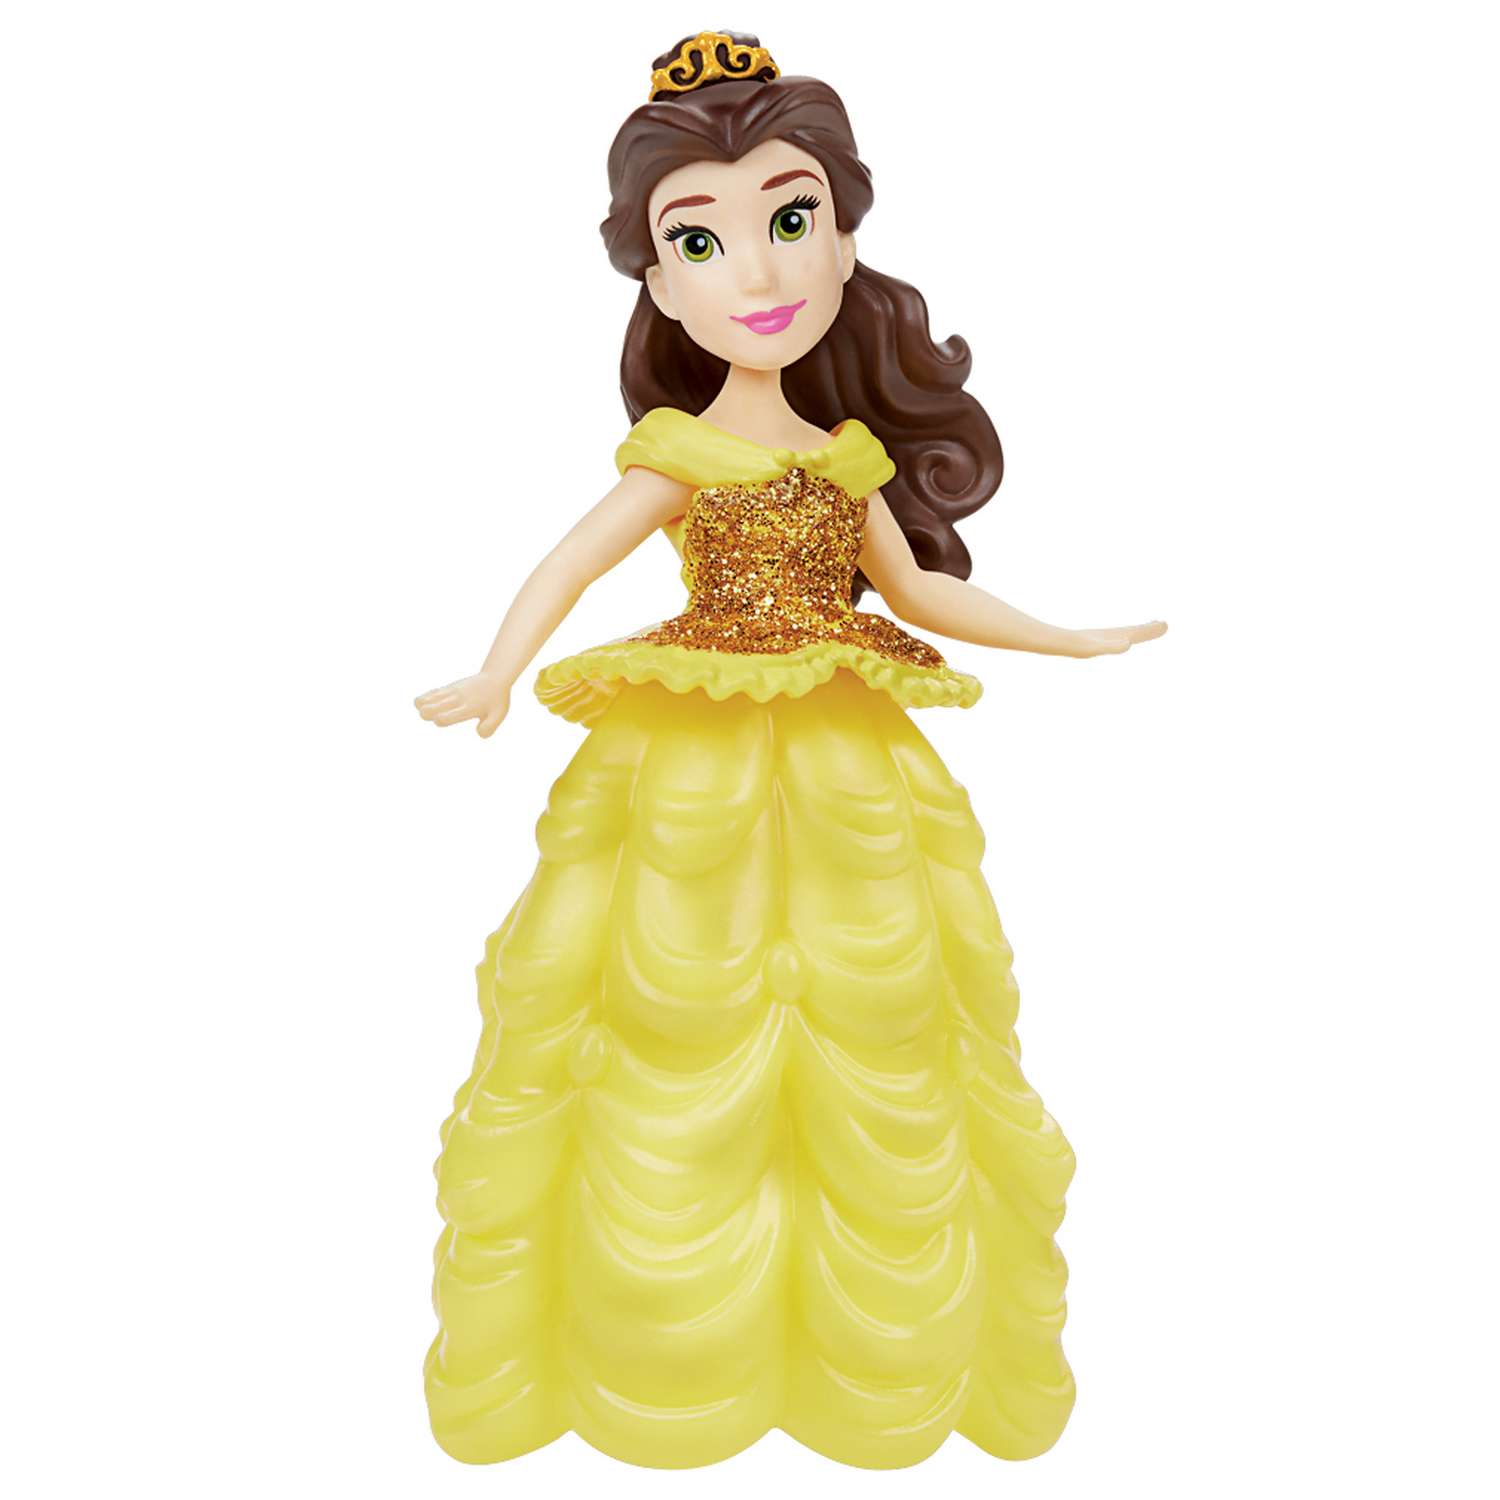 Figuras Disney de colección para 2014  Бель принцесса диснея, Принцессы,  Принцесса белль